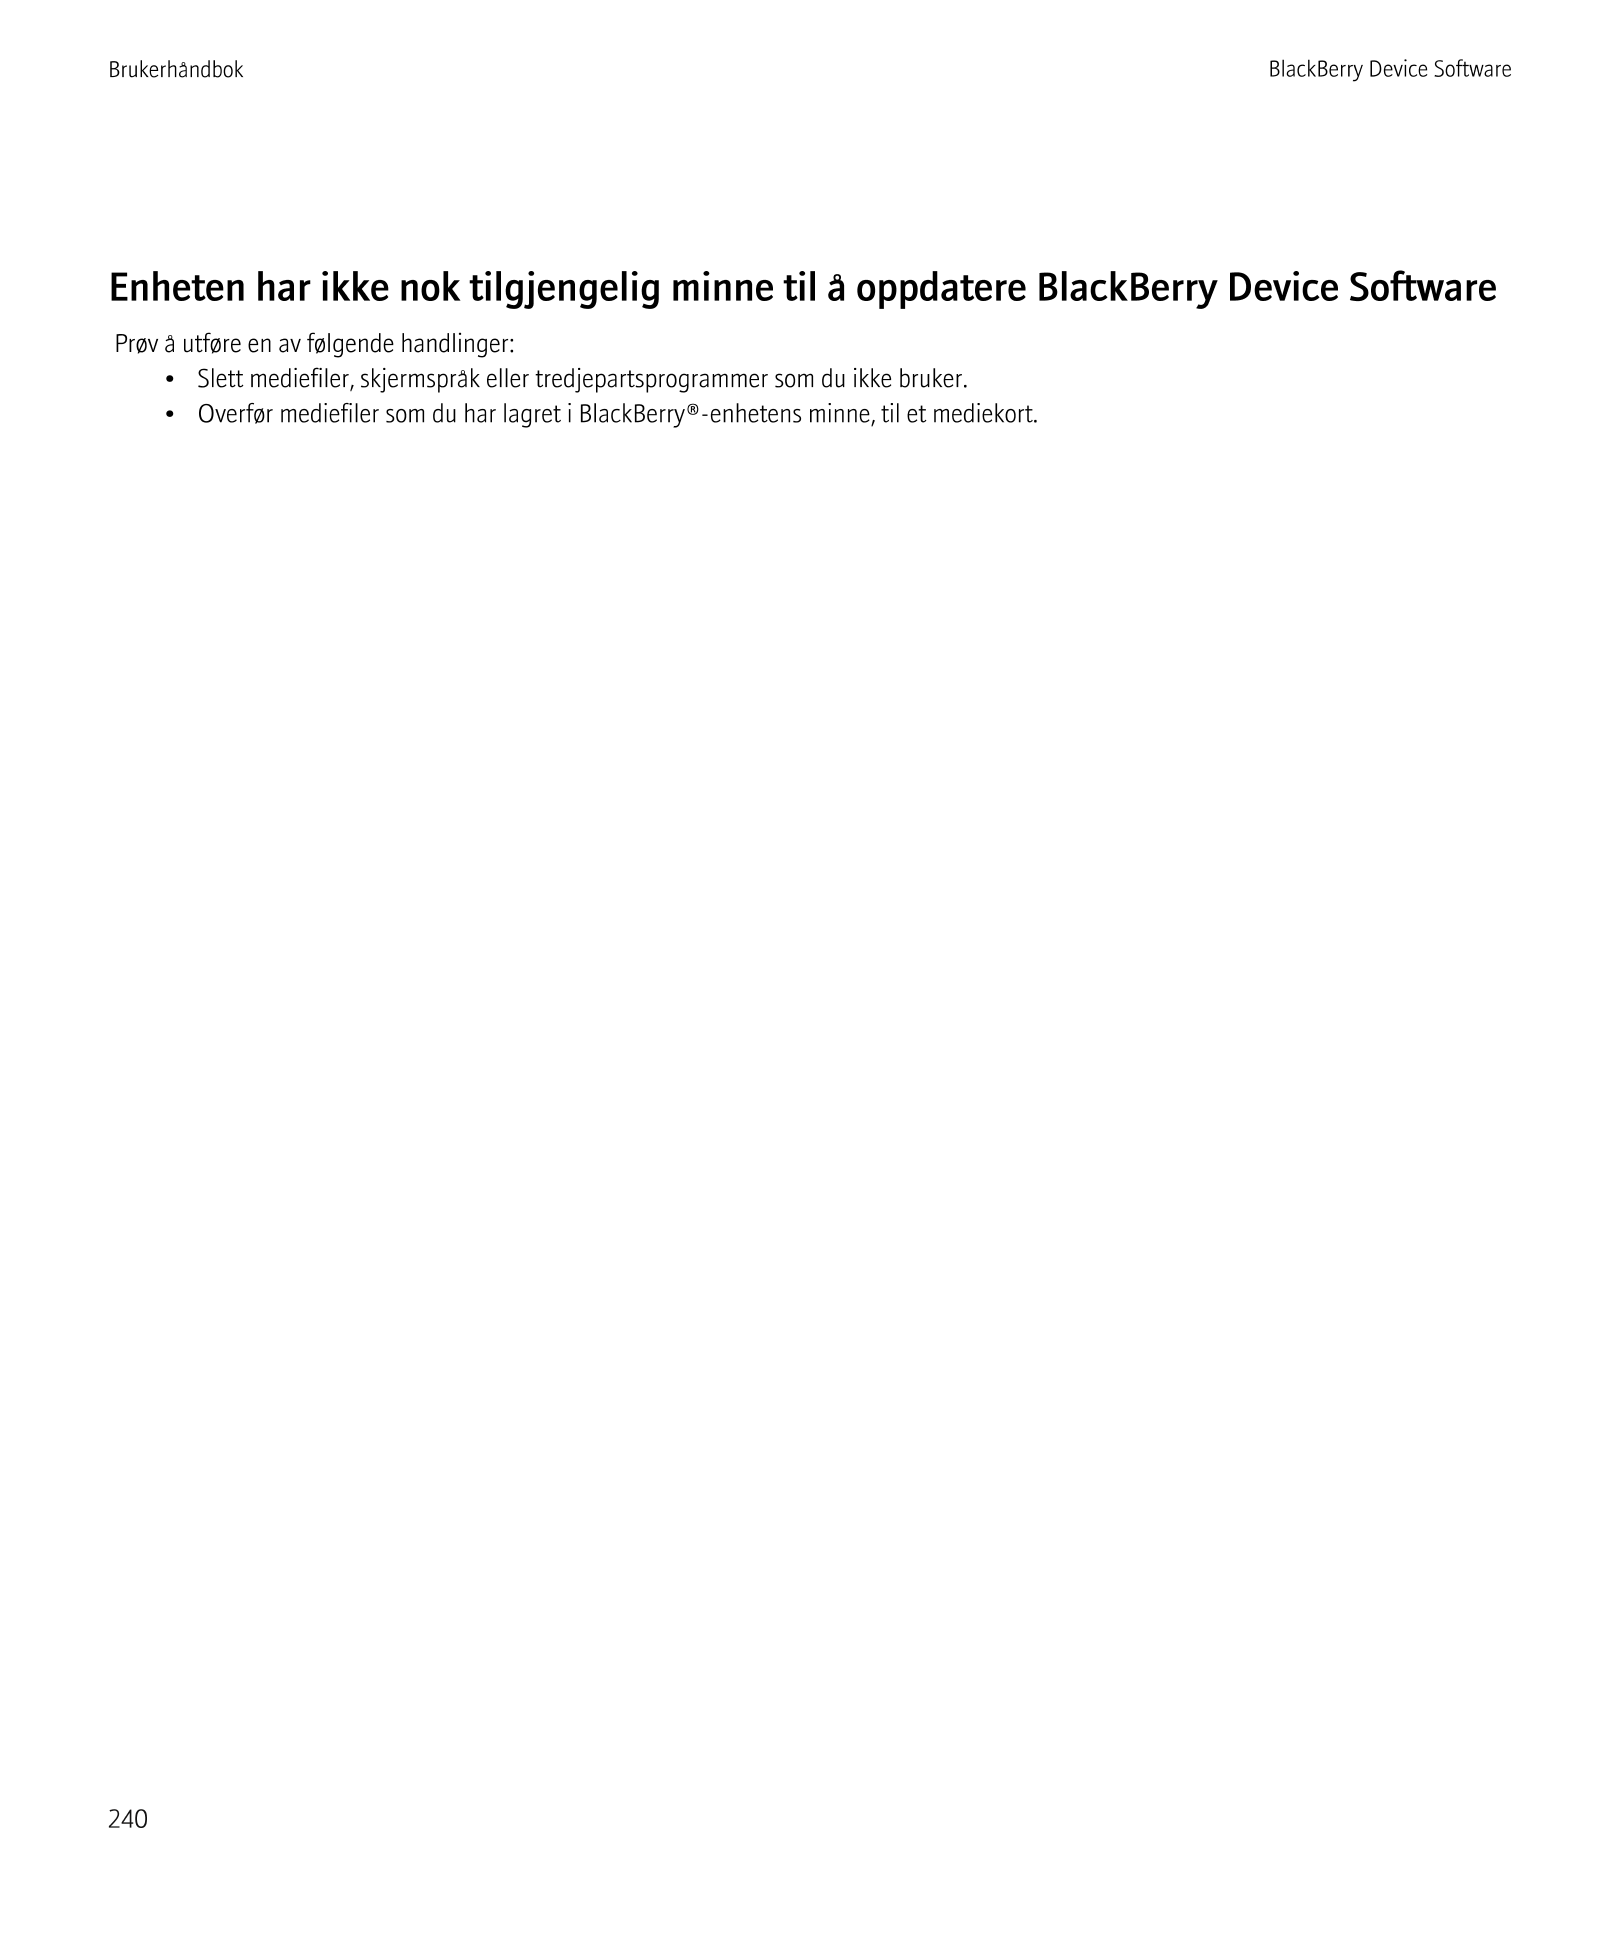 Brukerhåndbok BlackBerry Device Software
Enheten har ikke nok tilgjengelig minne til å oppdatere BlackBerry Device Software
Prøv